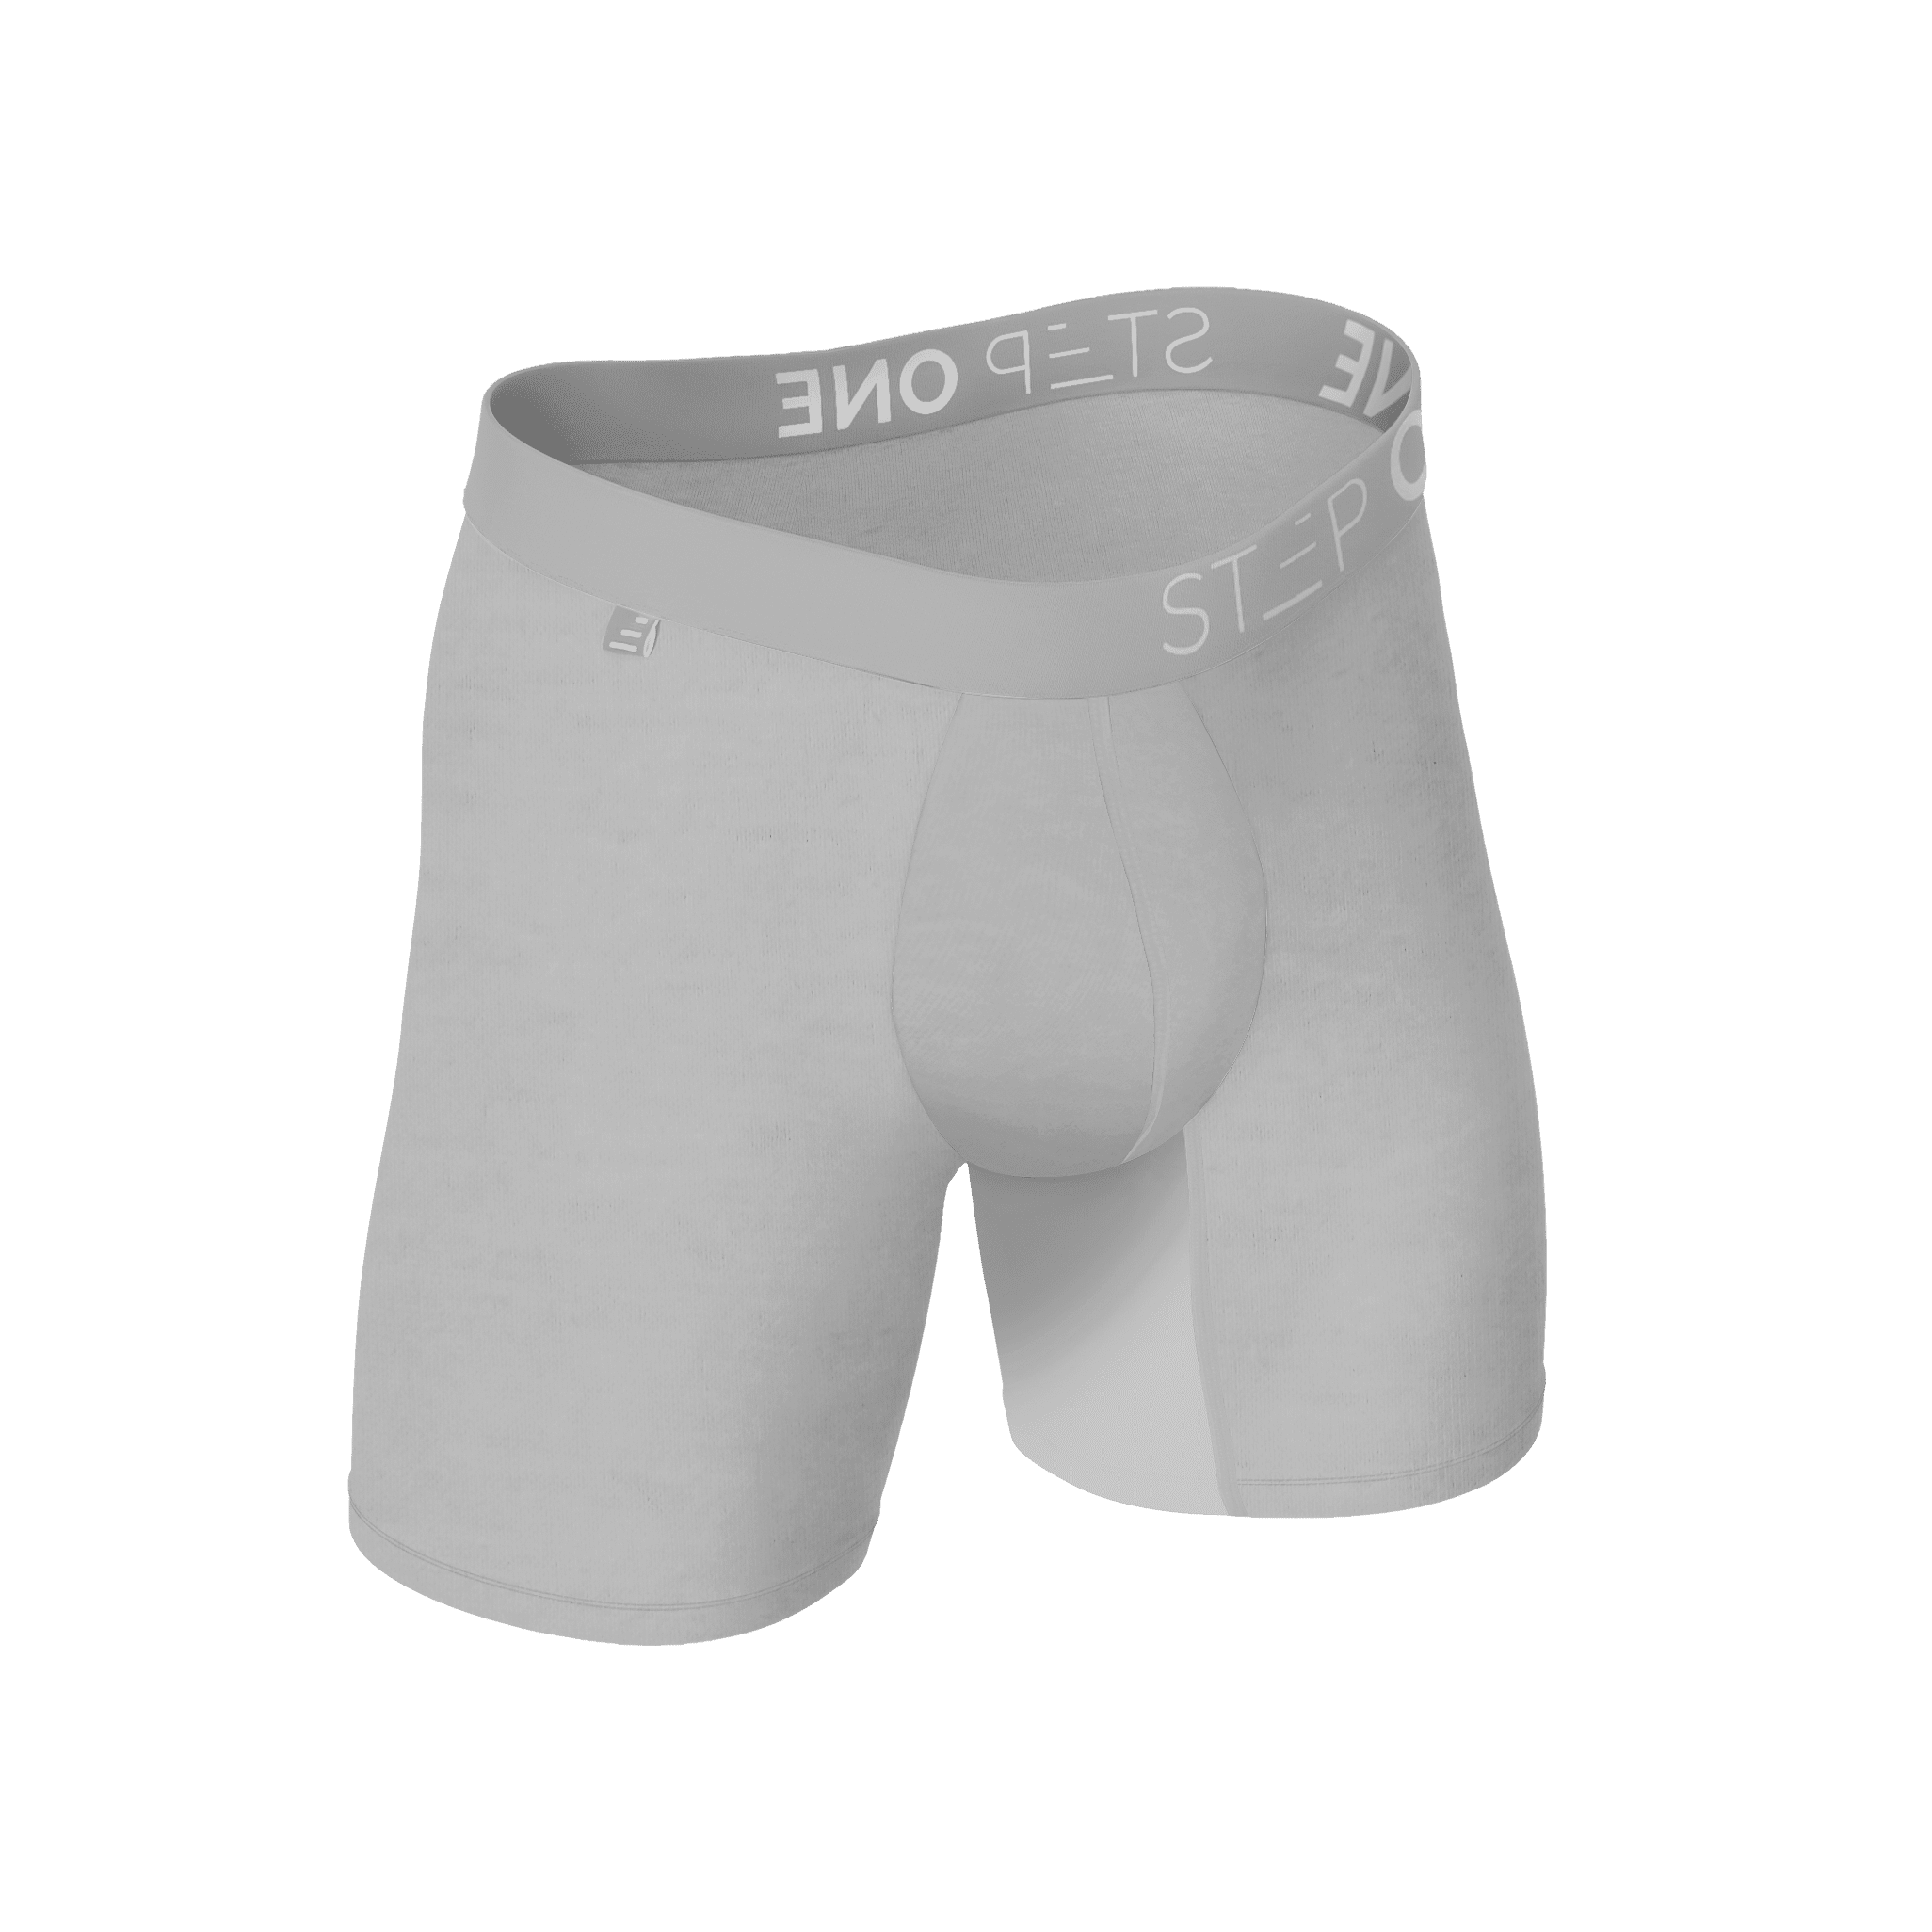 Boxer Brief - Hot Sauce  Step One Men's Bamboo Underwear